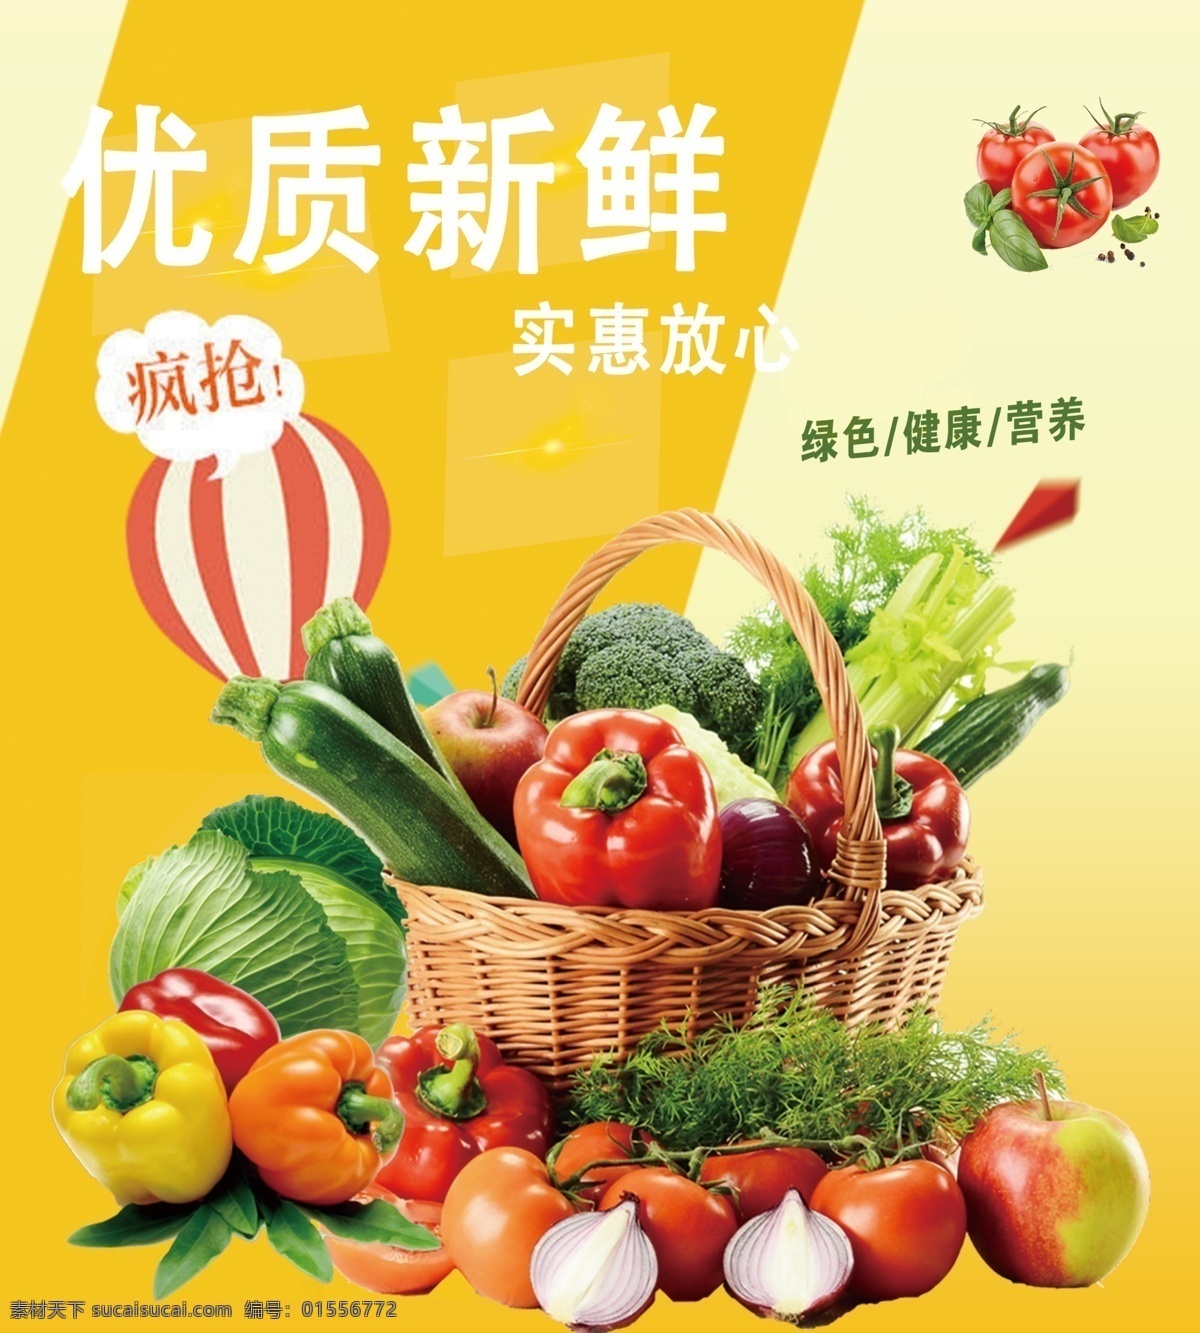 蔬菜促销广告 蔬菜 促销 宣传 展示 广告